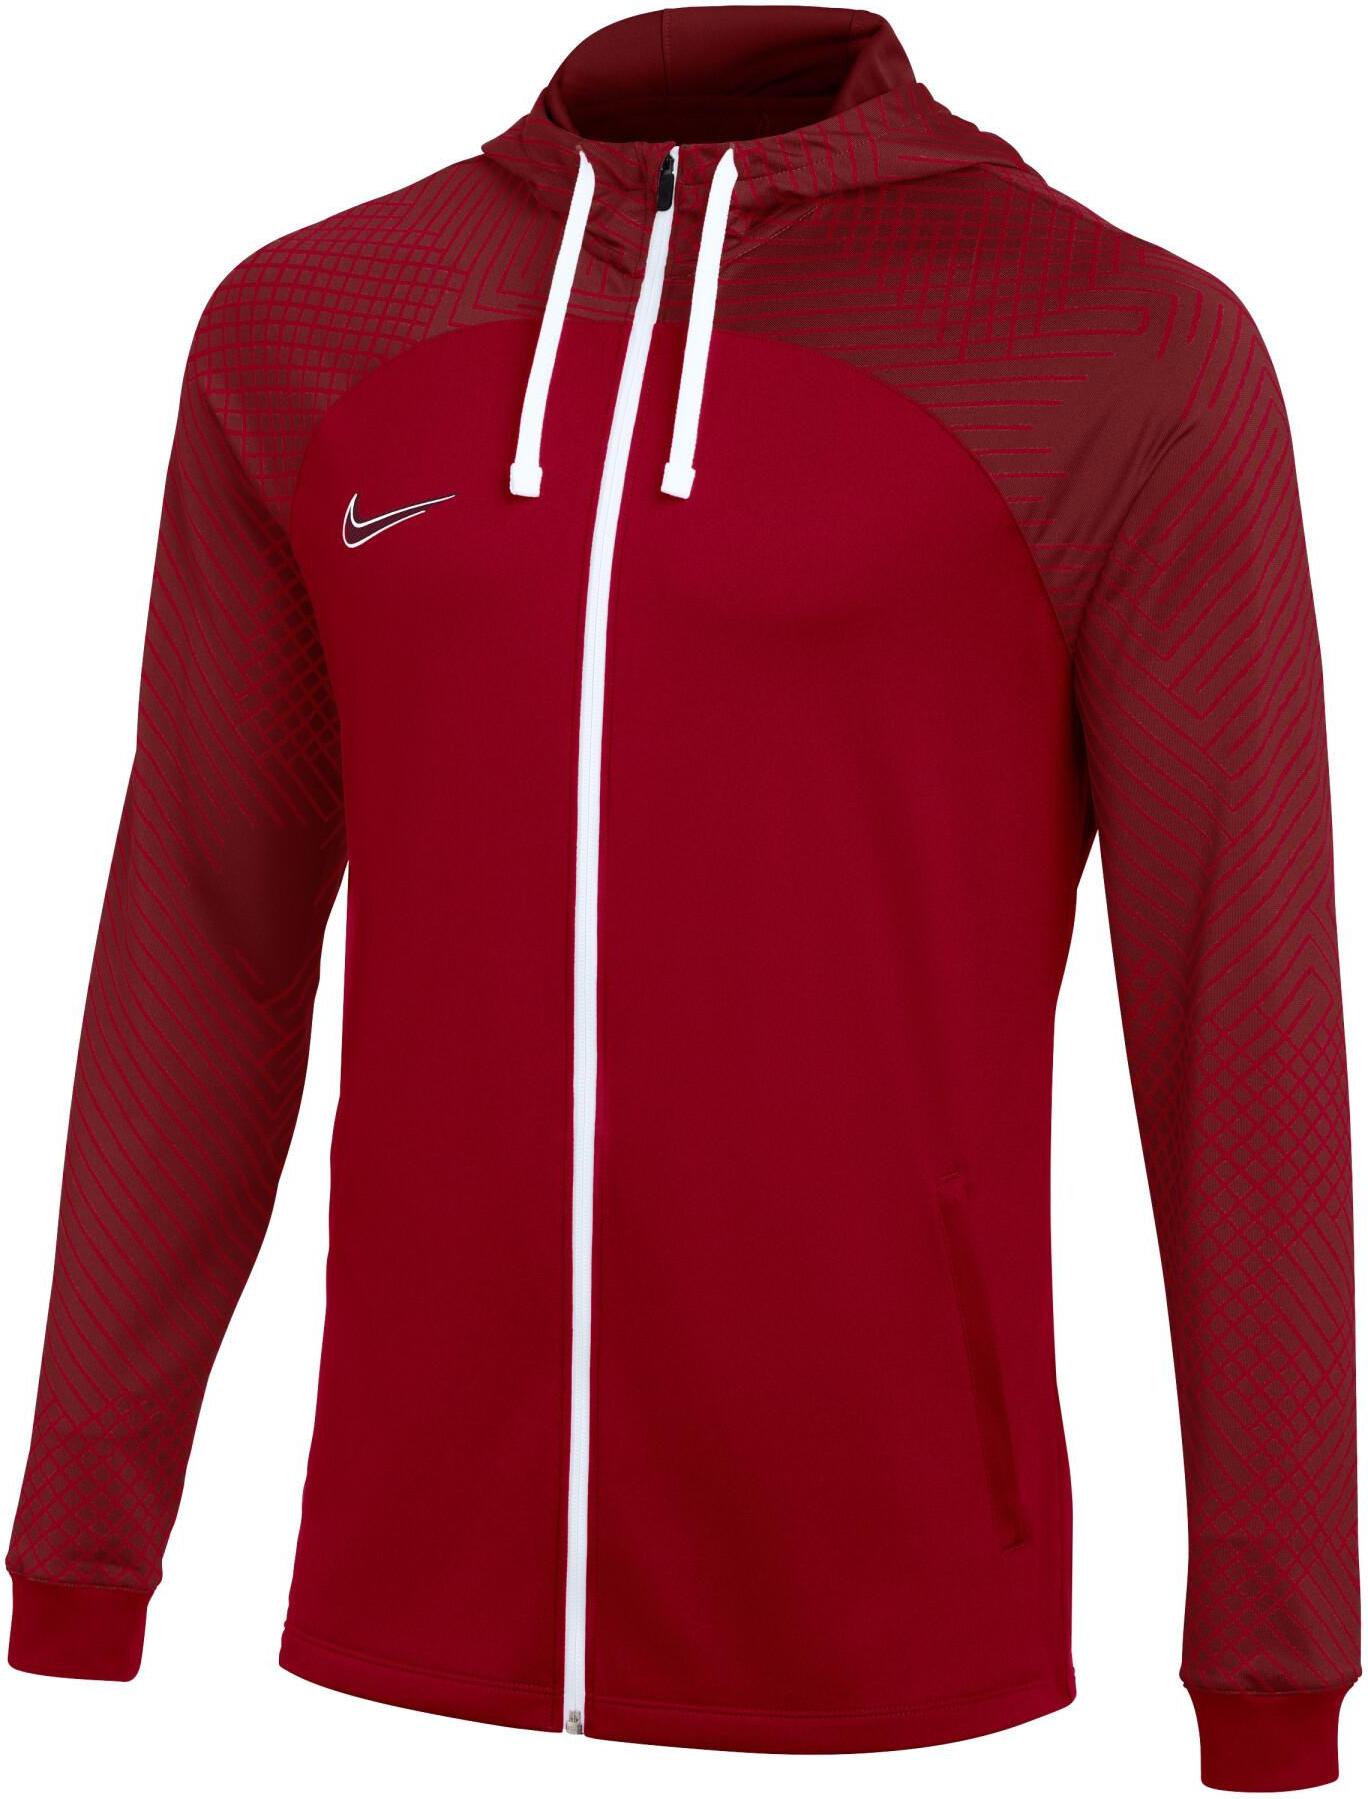 Pánská atletická bunda s kapucí Nike Strike 22